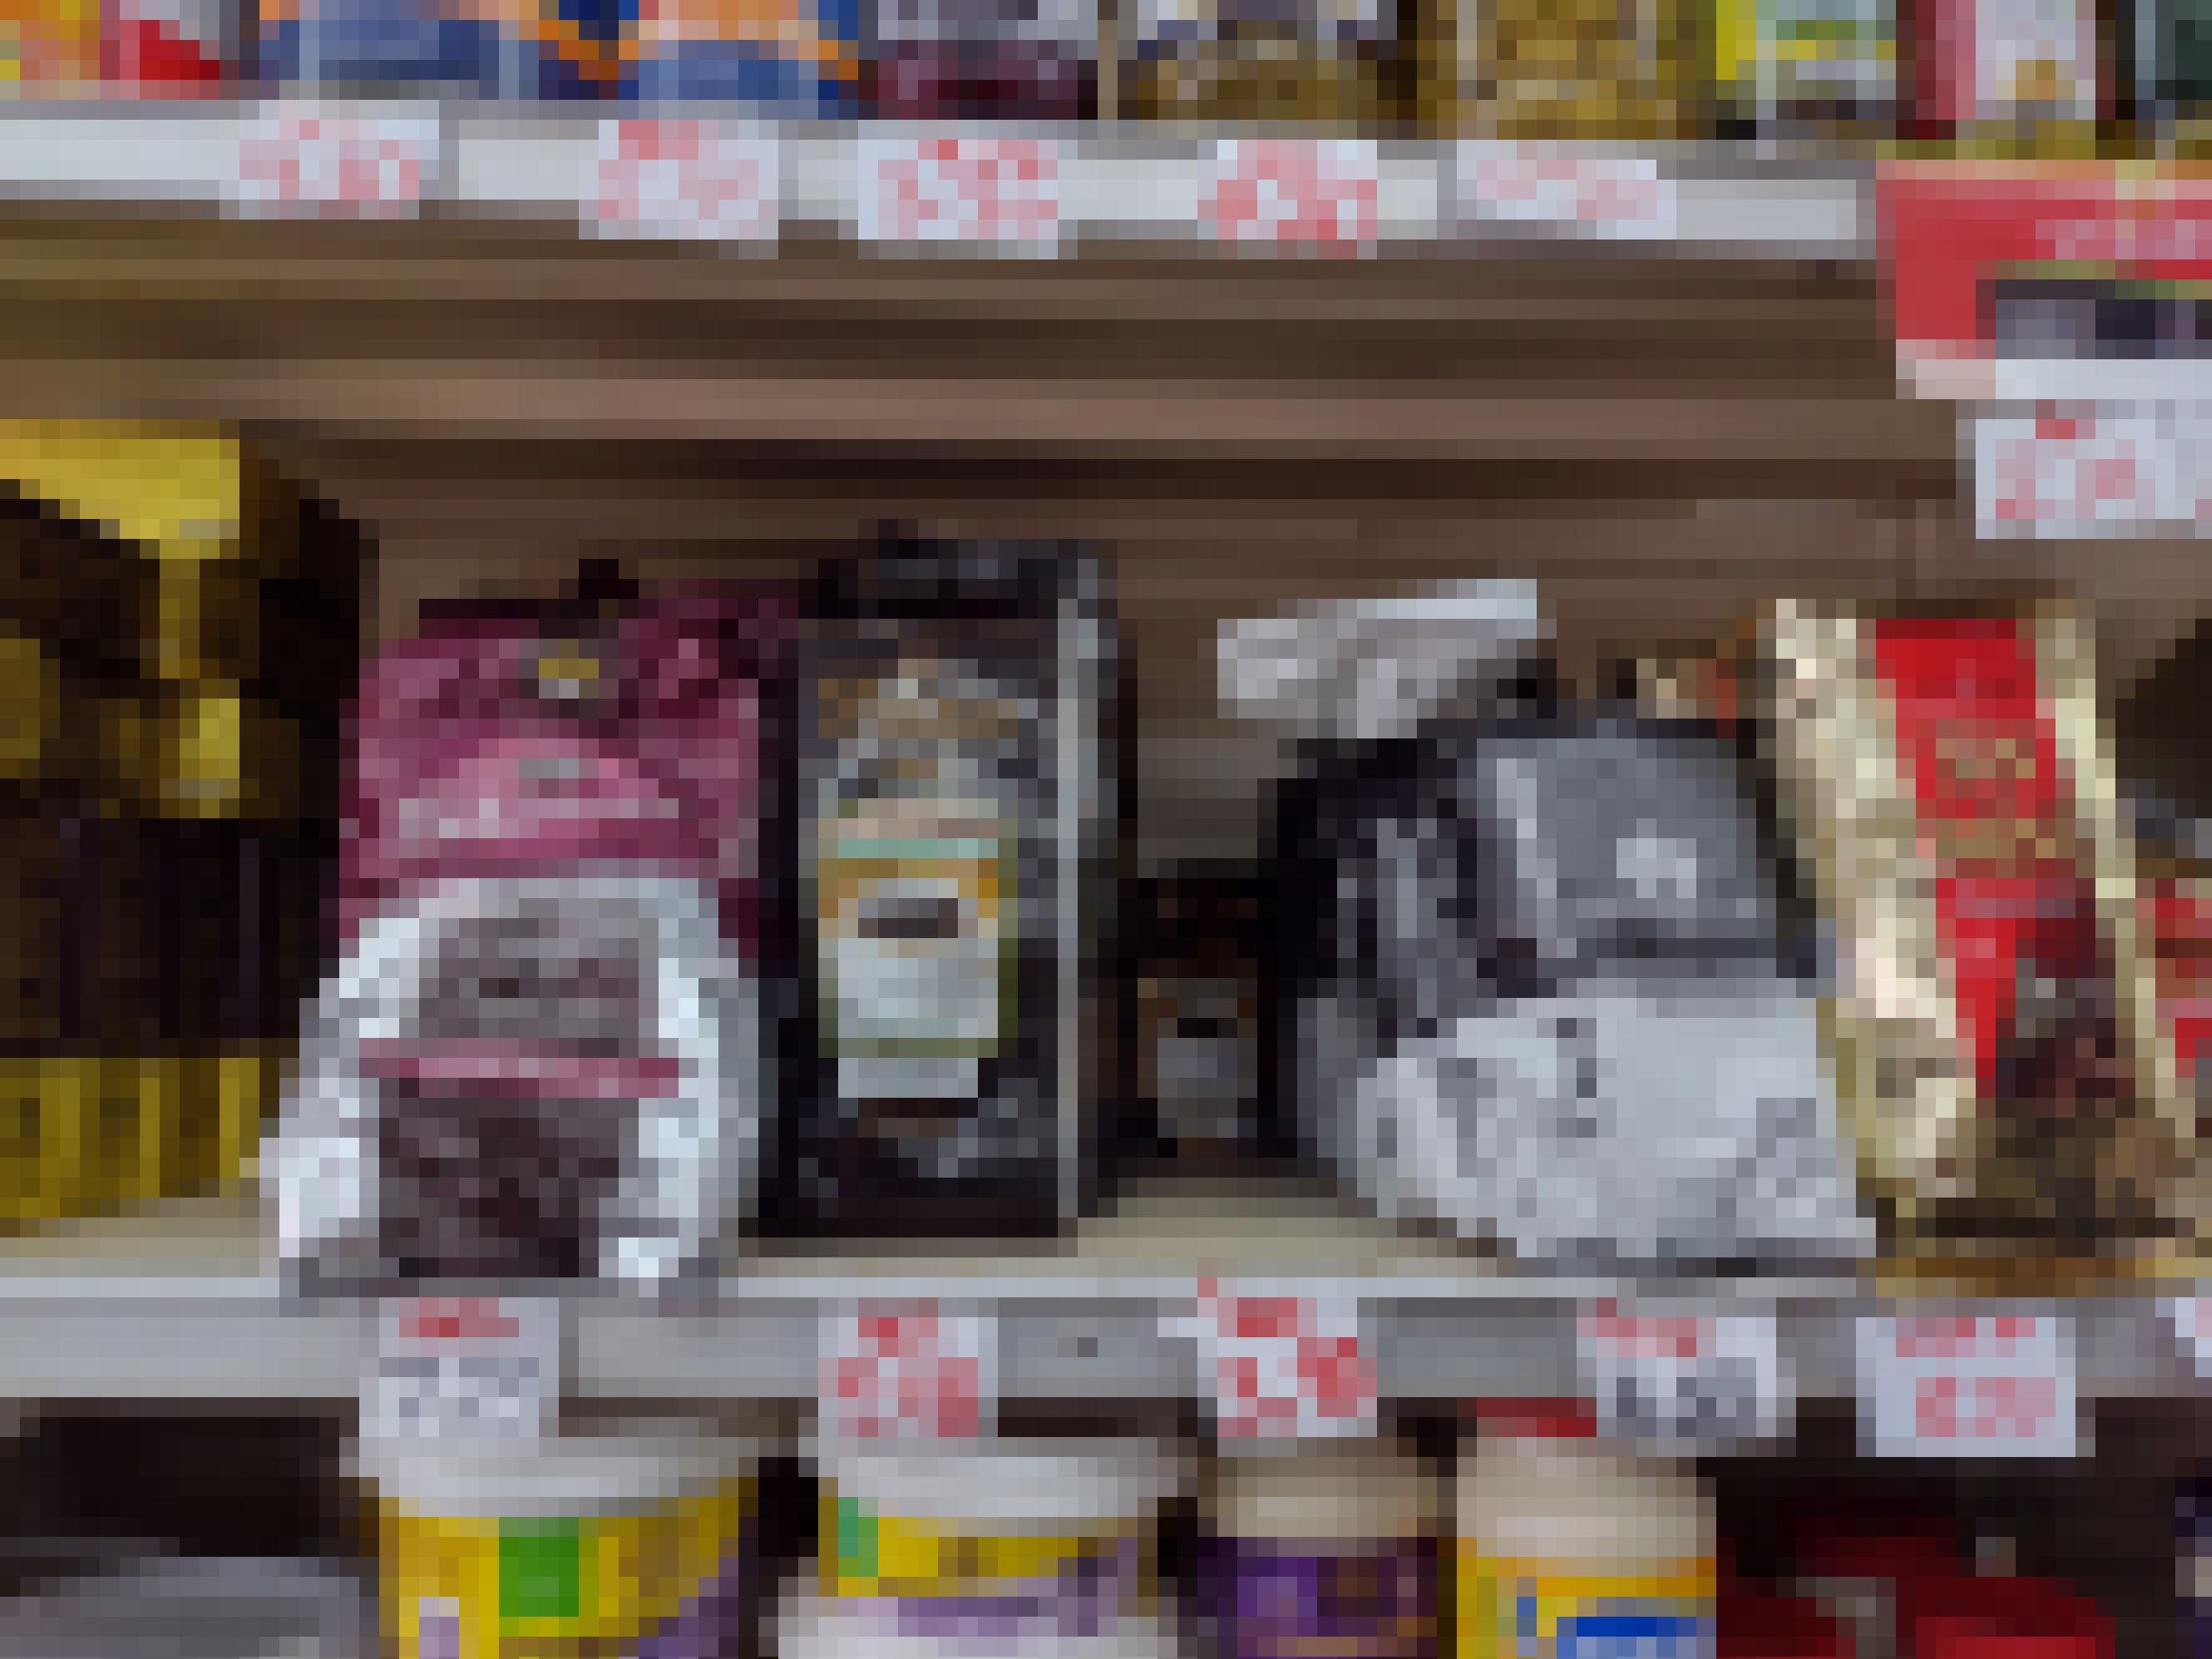 Ladenregale mit Kaffeepäckchen verschiedener Sorten, darunter handgeschrieben der Preis. Die Zahl bezieht sich auf US-Dollar. Ein Pfund Kaffee kostet rund 8 – 9 Dollar.